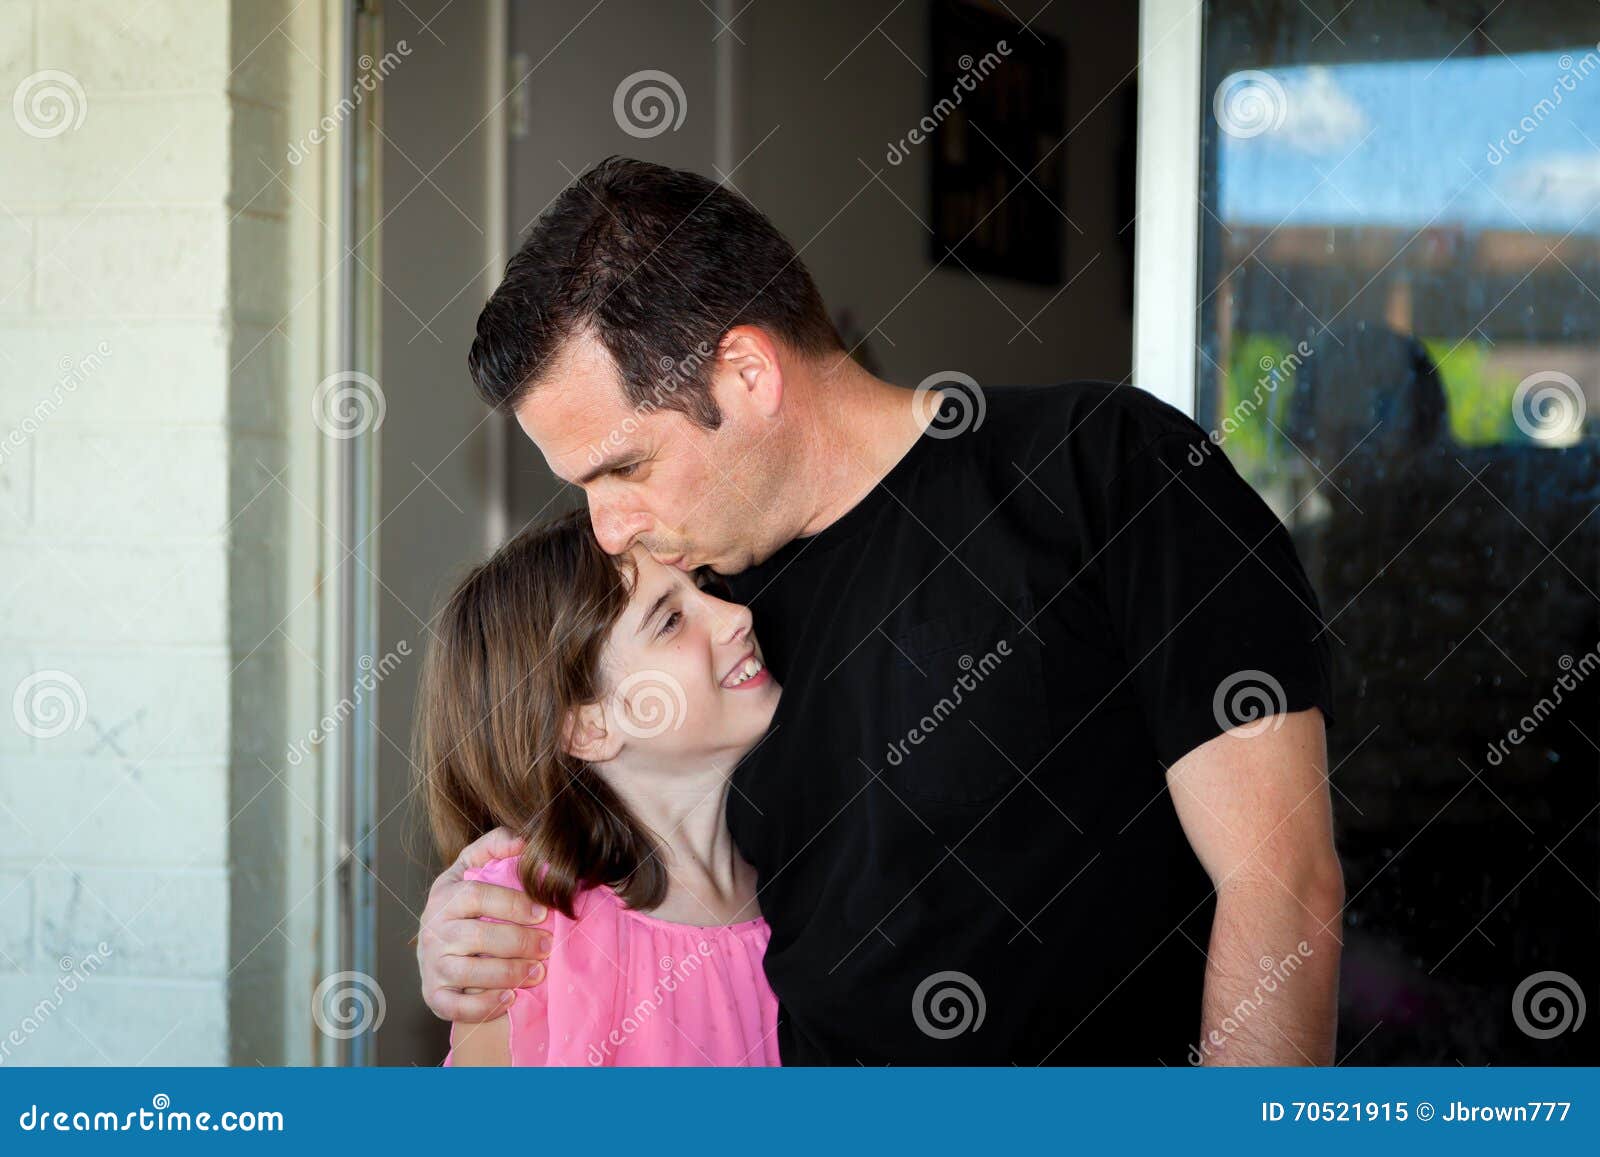 Папа лоб. Поцелуй отца и дочери. Поцелуй папу. Отец целует дочь в лоб. Папа с дочкой с языком.